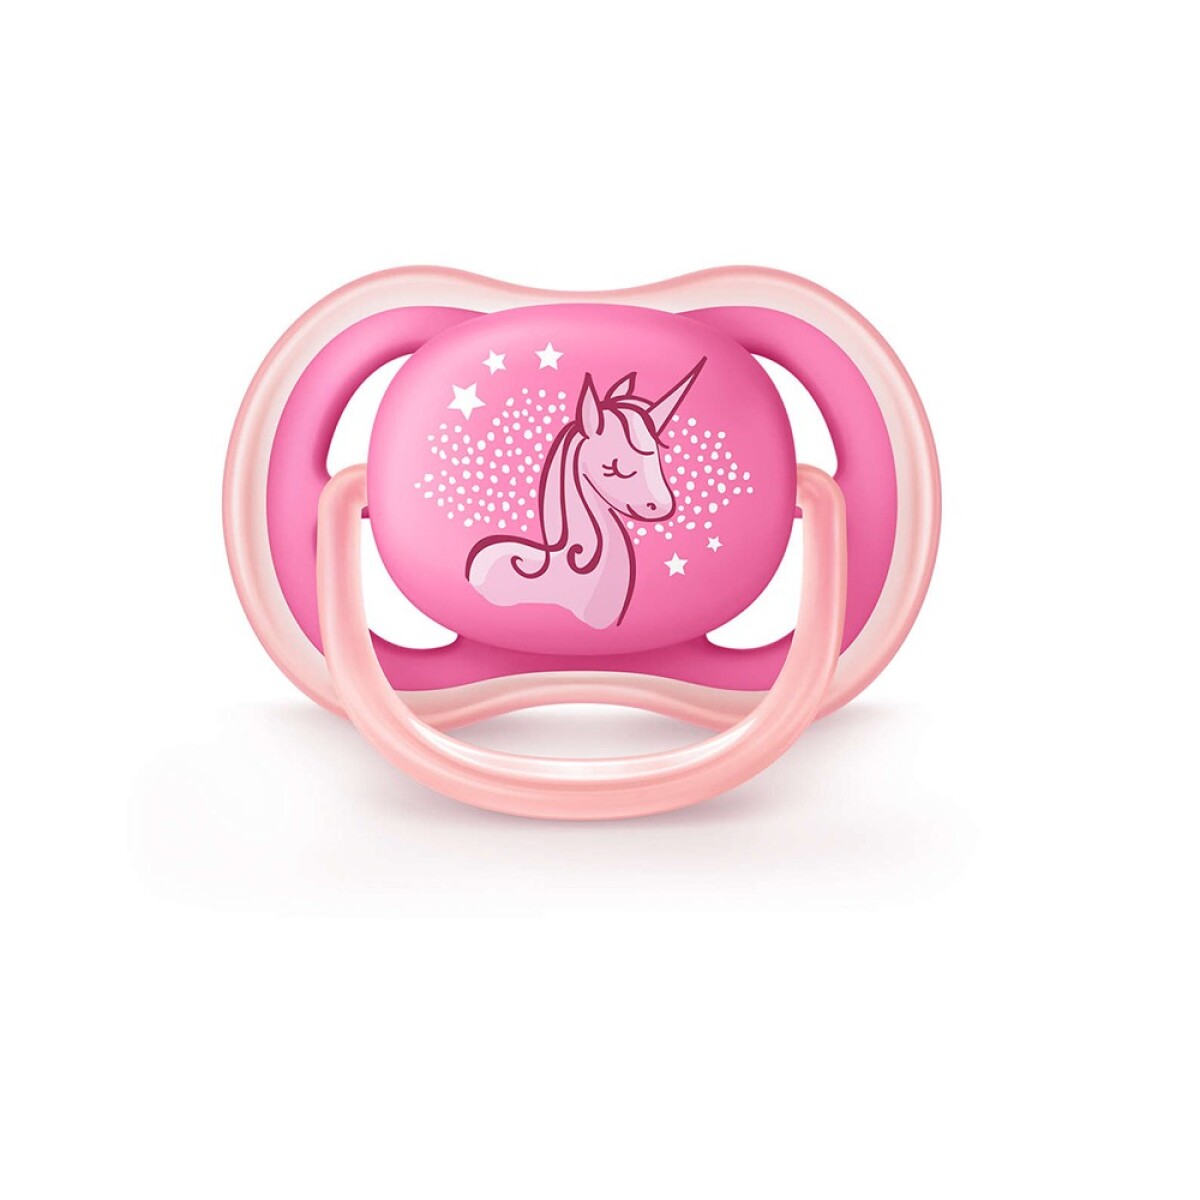 Chupete ultra air Avent unicornio de 6 a 18 meses rosa - ROSA 